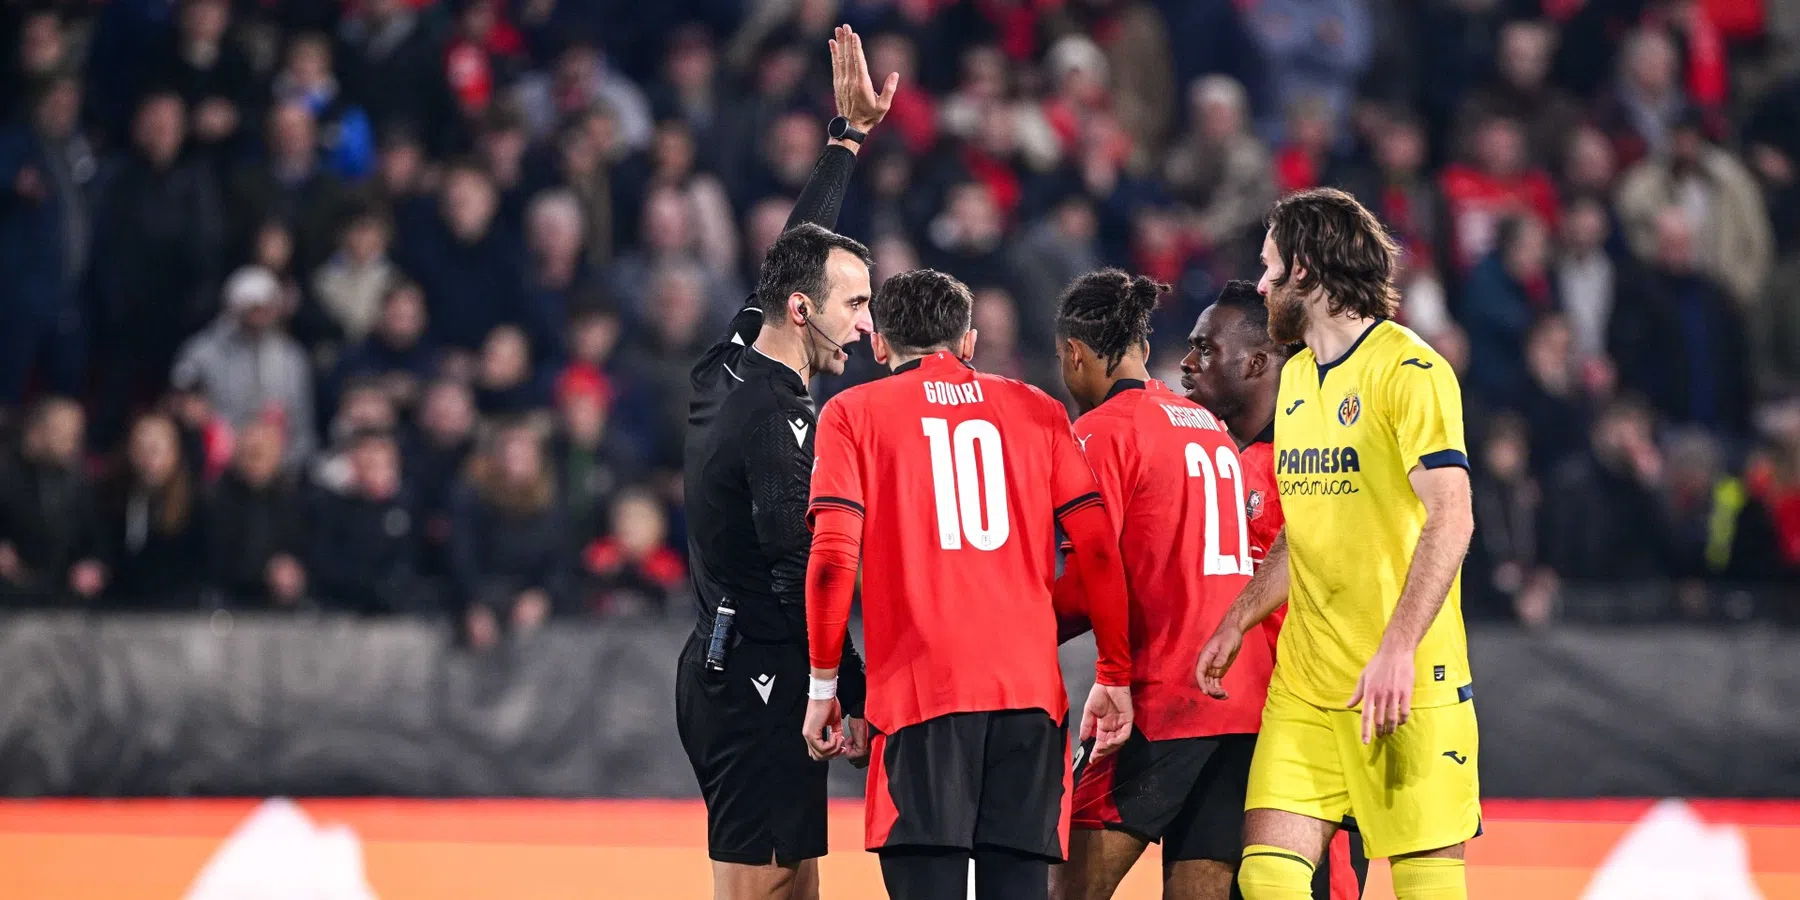 Bizar einde Rennes - Villarreal kost Fransen de groepswinst 